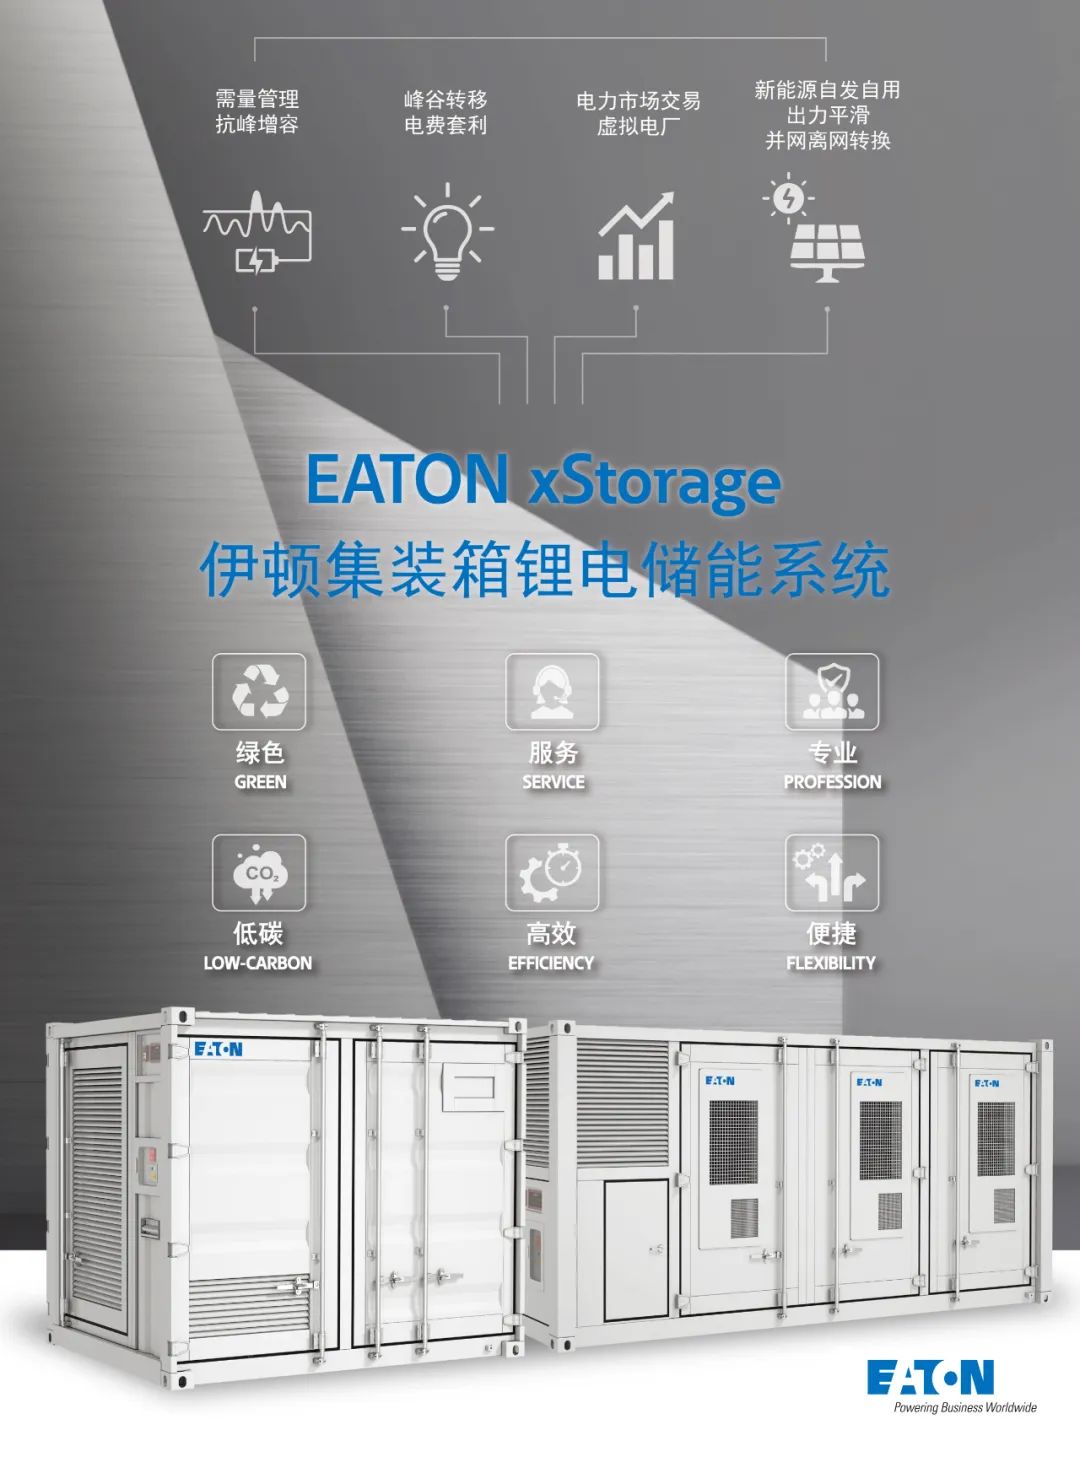 伊顿 xStorage 储能系统产品线正式上线，开启数据中心低碳全新篇章(图2)